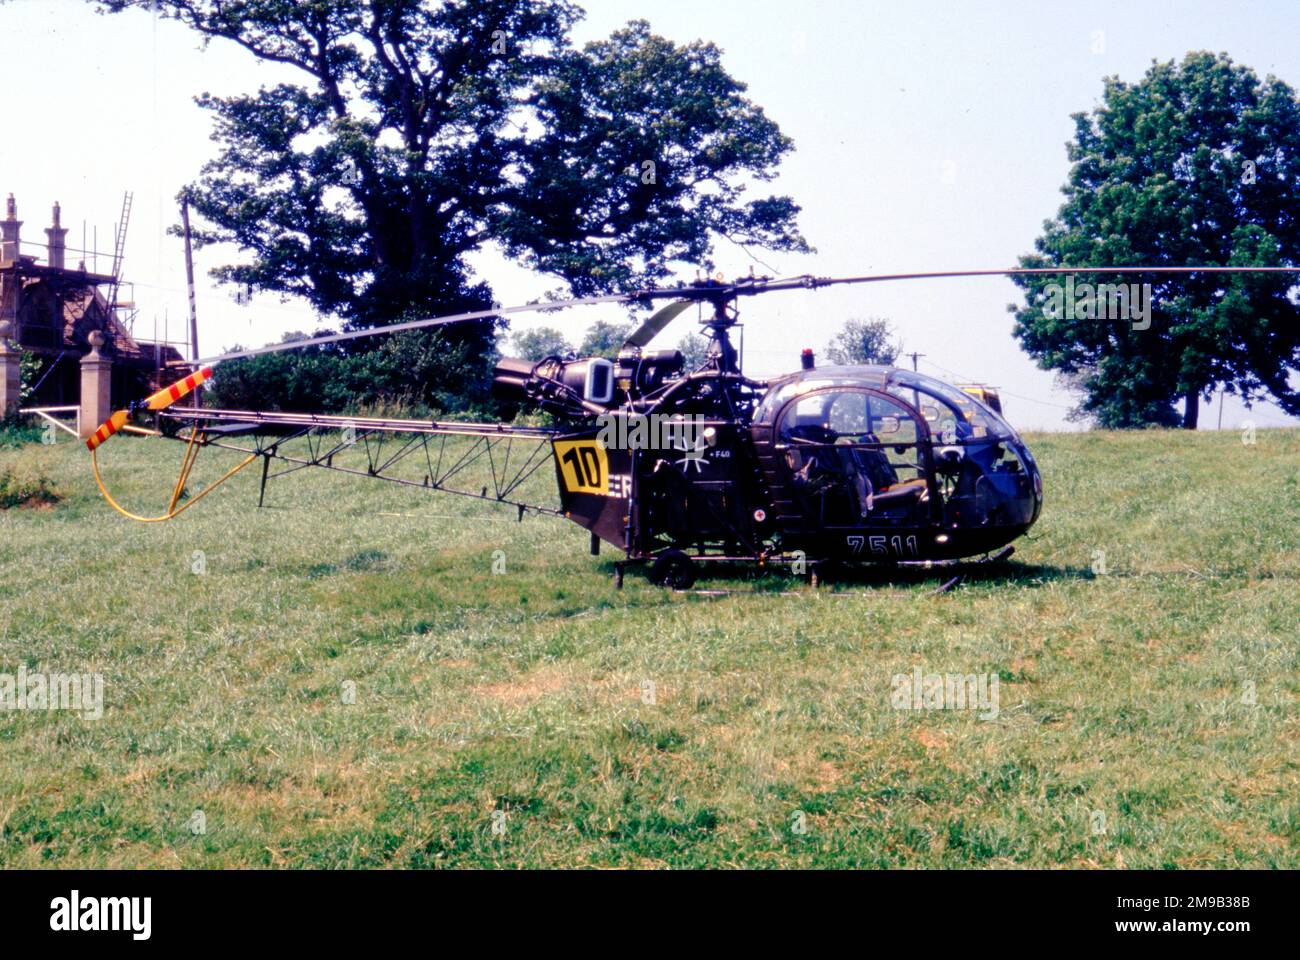 Heeresflieger - Aerospatiale se.3130 Alouette II 75+11 (msn 1217), au Château Ashby pour les Championnats du monde d'hélicoptères, le 26 juin 1986. (Heeresflieger - Aviation militaire allemande). Banque D'Images